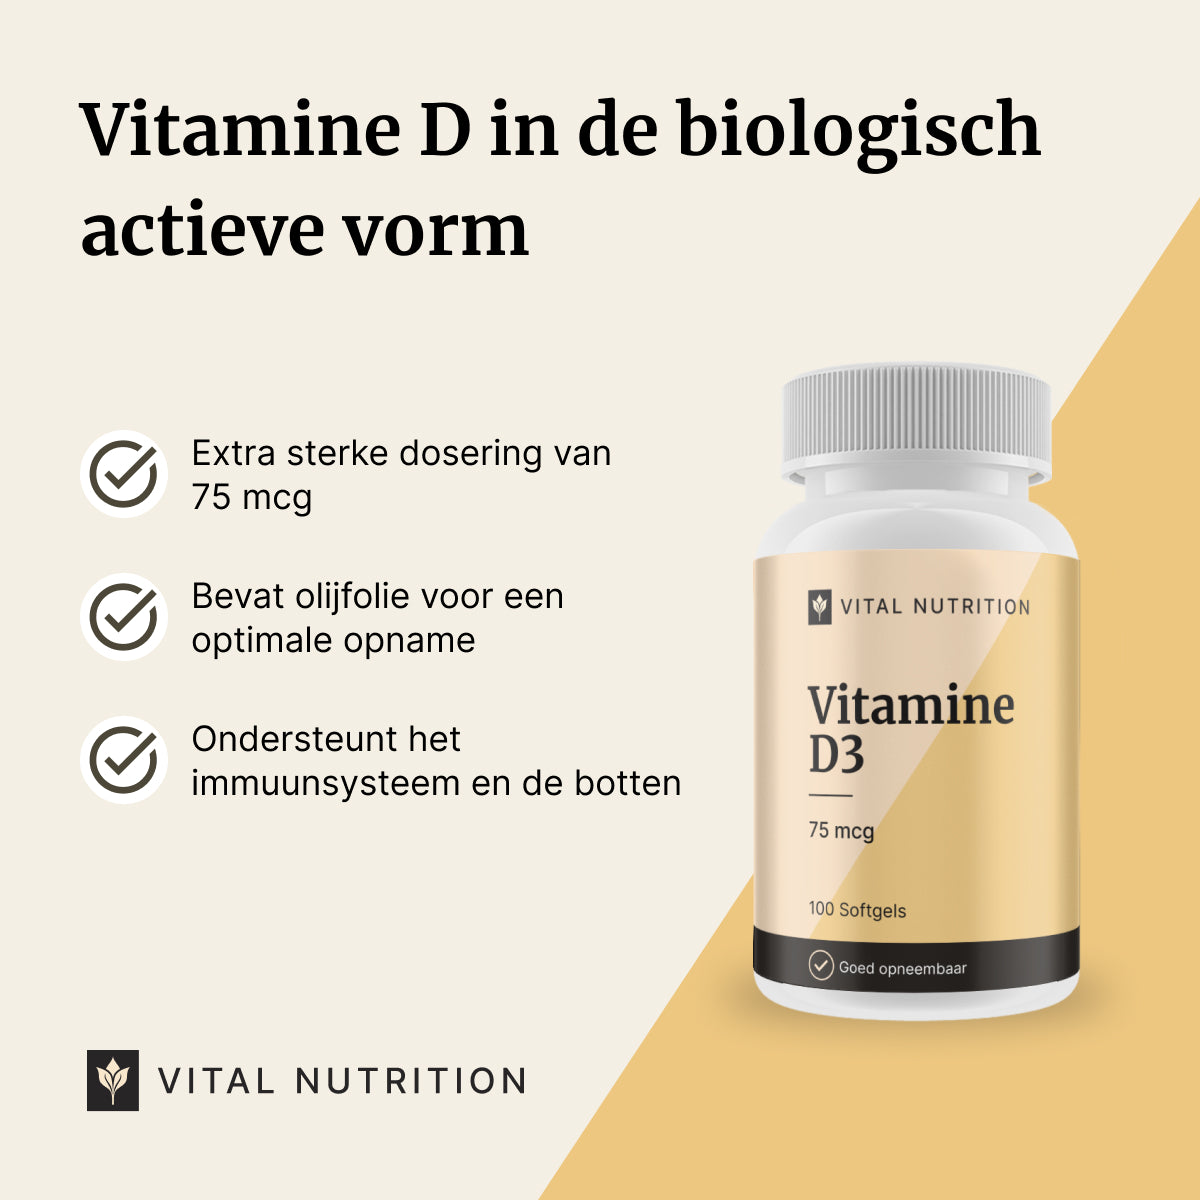 Beschrijving van de voordelen van Vitamine D3 van Vital Nutrition